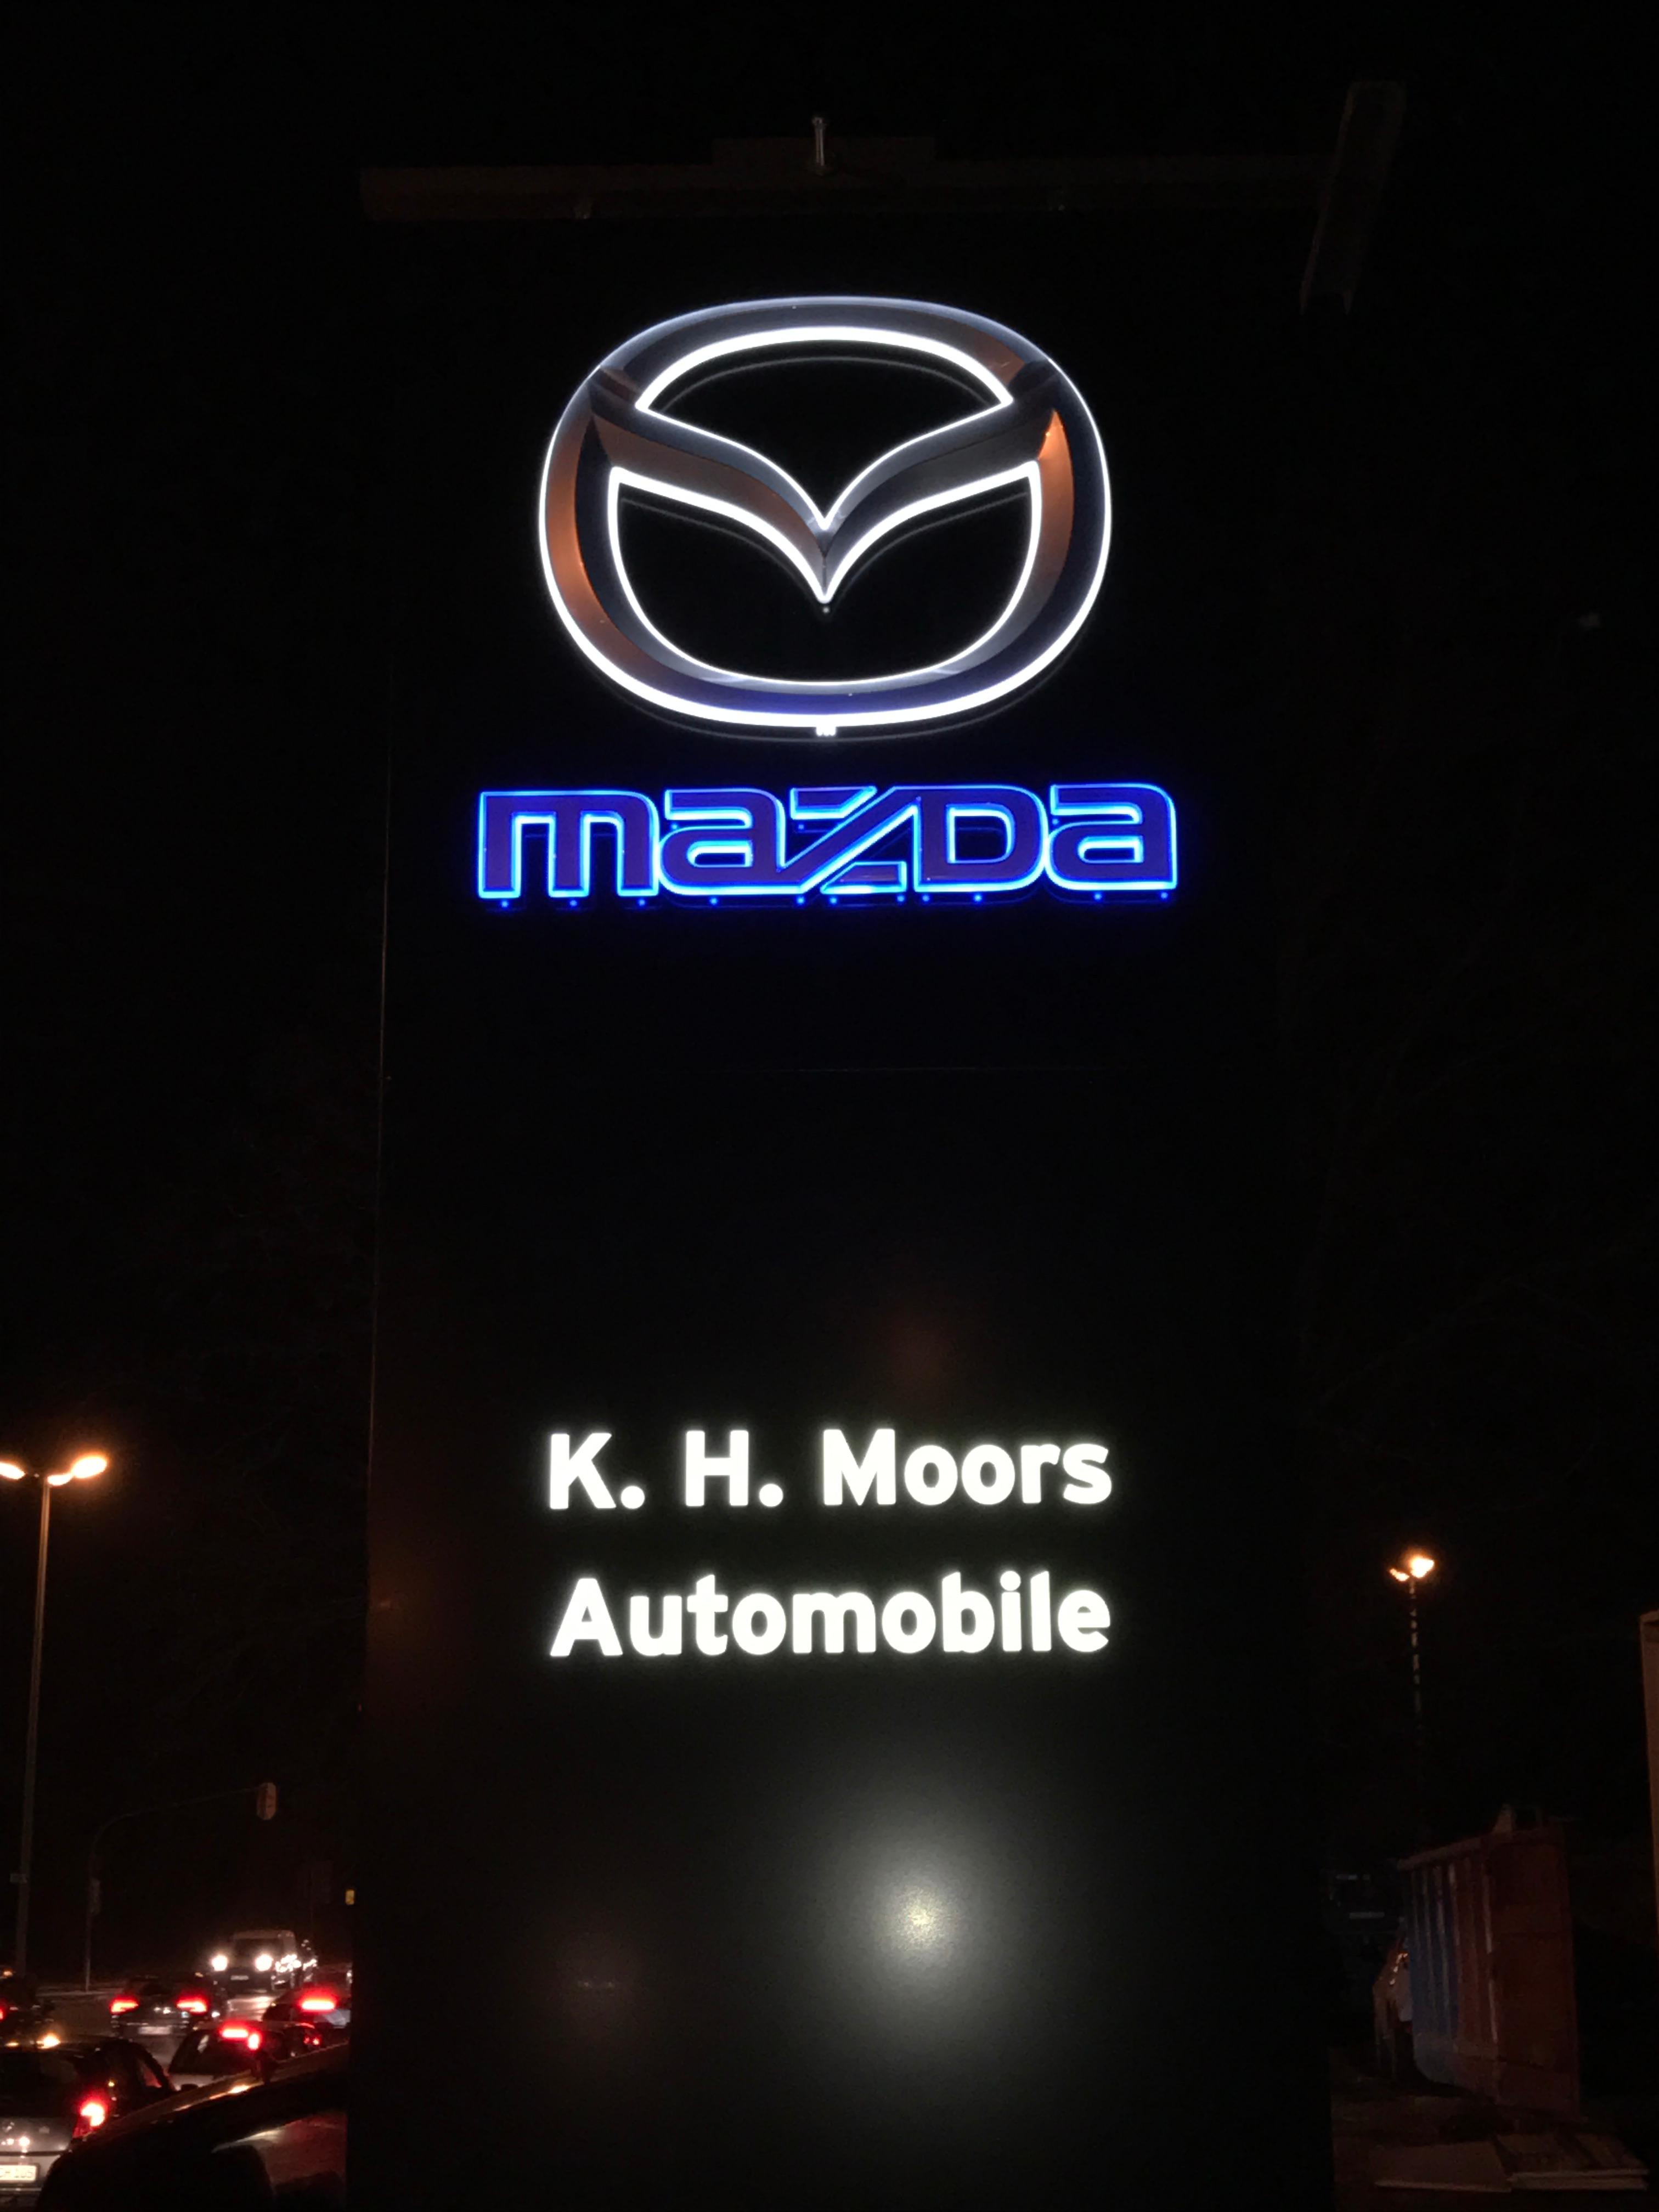 K.H. Moors GmbH Automobile Mazda-Händler, Jülicher Landstraße 188 in Neuss